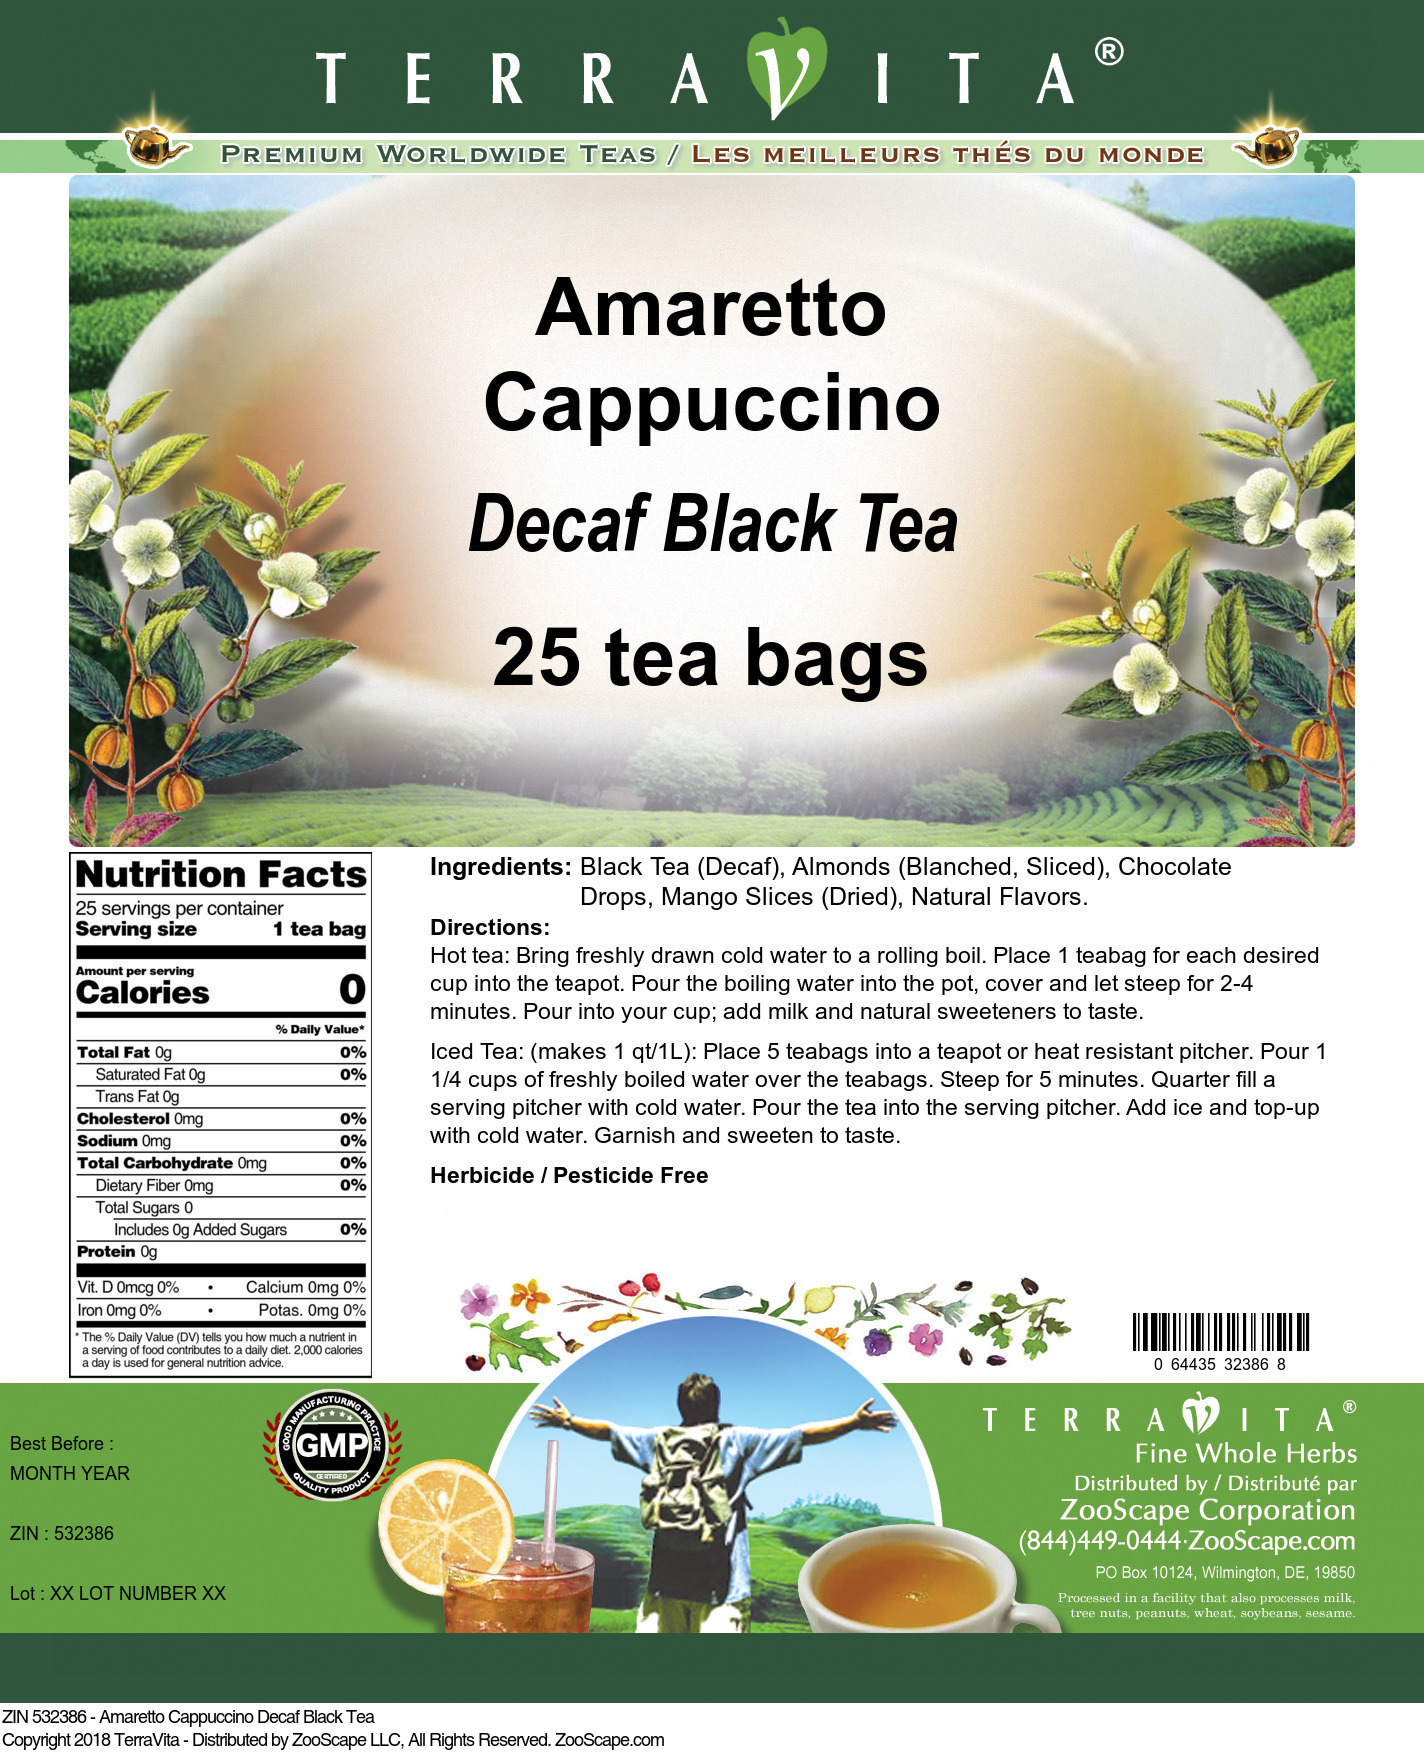 Amaretto Cappuccino Decaf Black Tea - Label